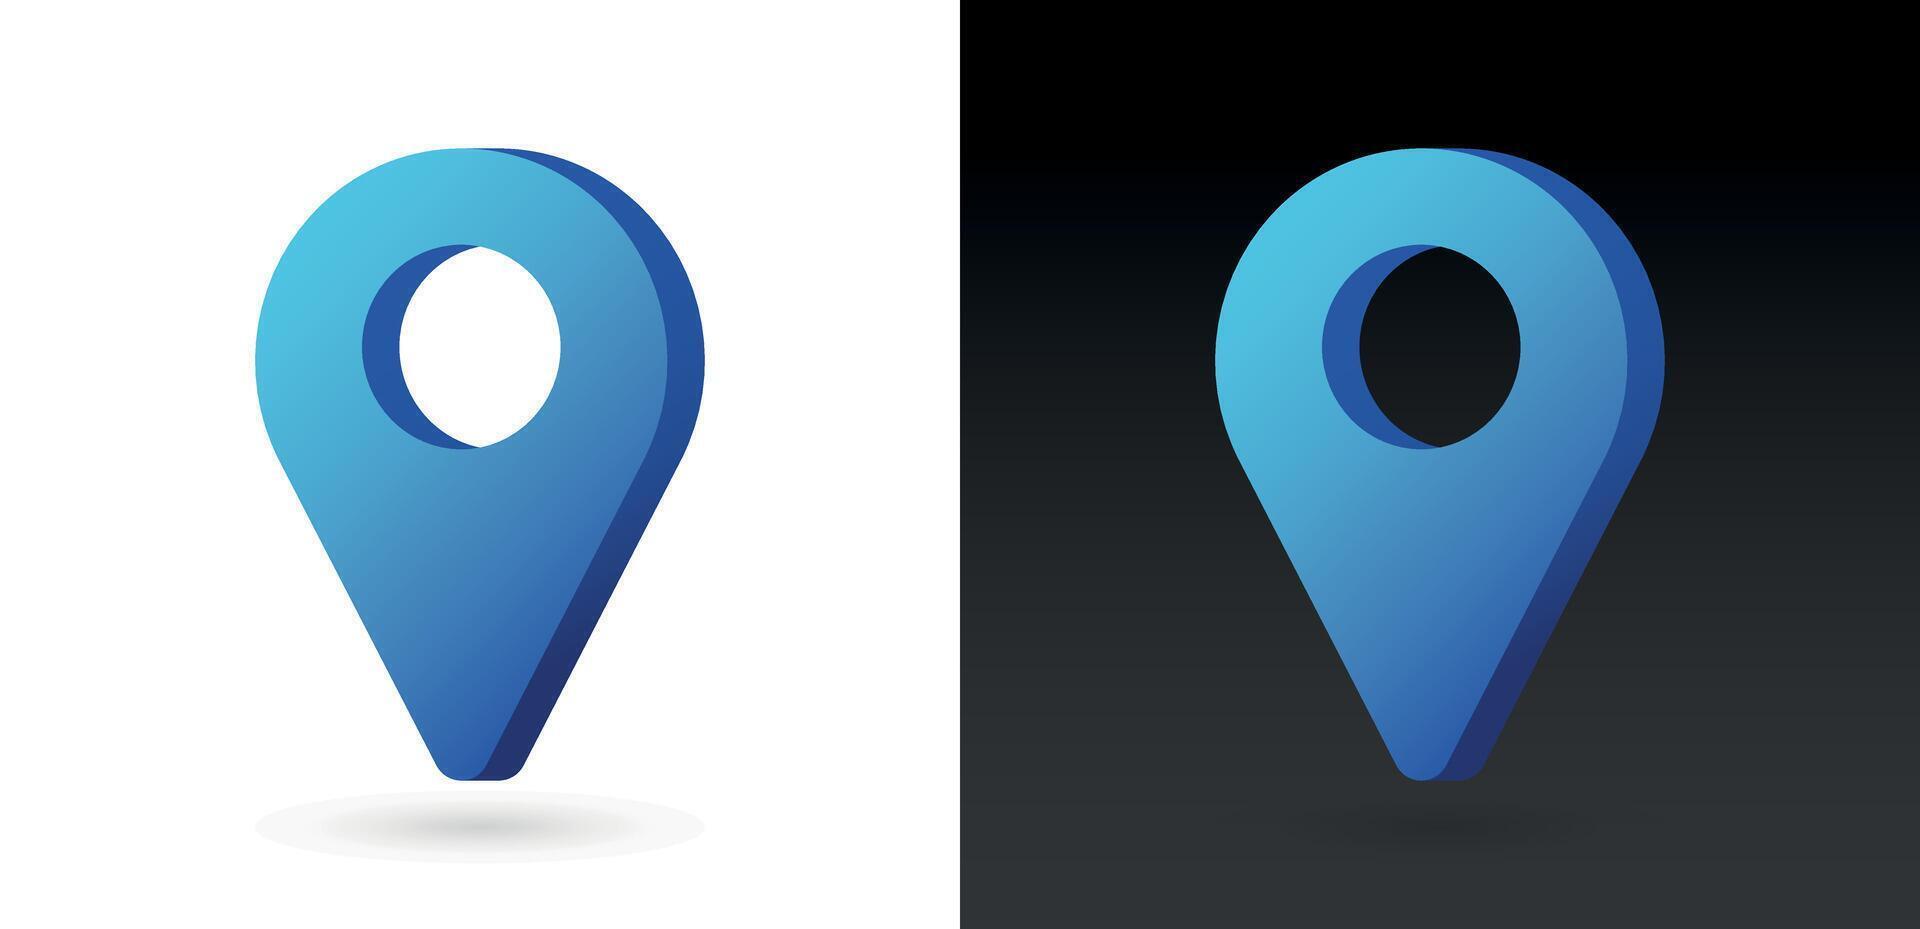 3d realistico blu colore Posizione carta geografica perno GPS pointer marcatori vettore illustrazione per destinazione.